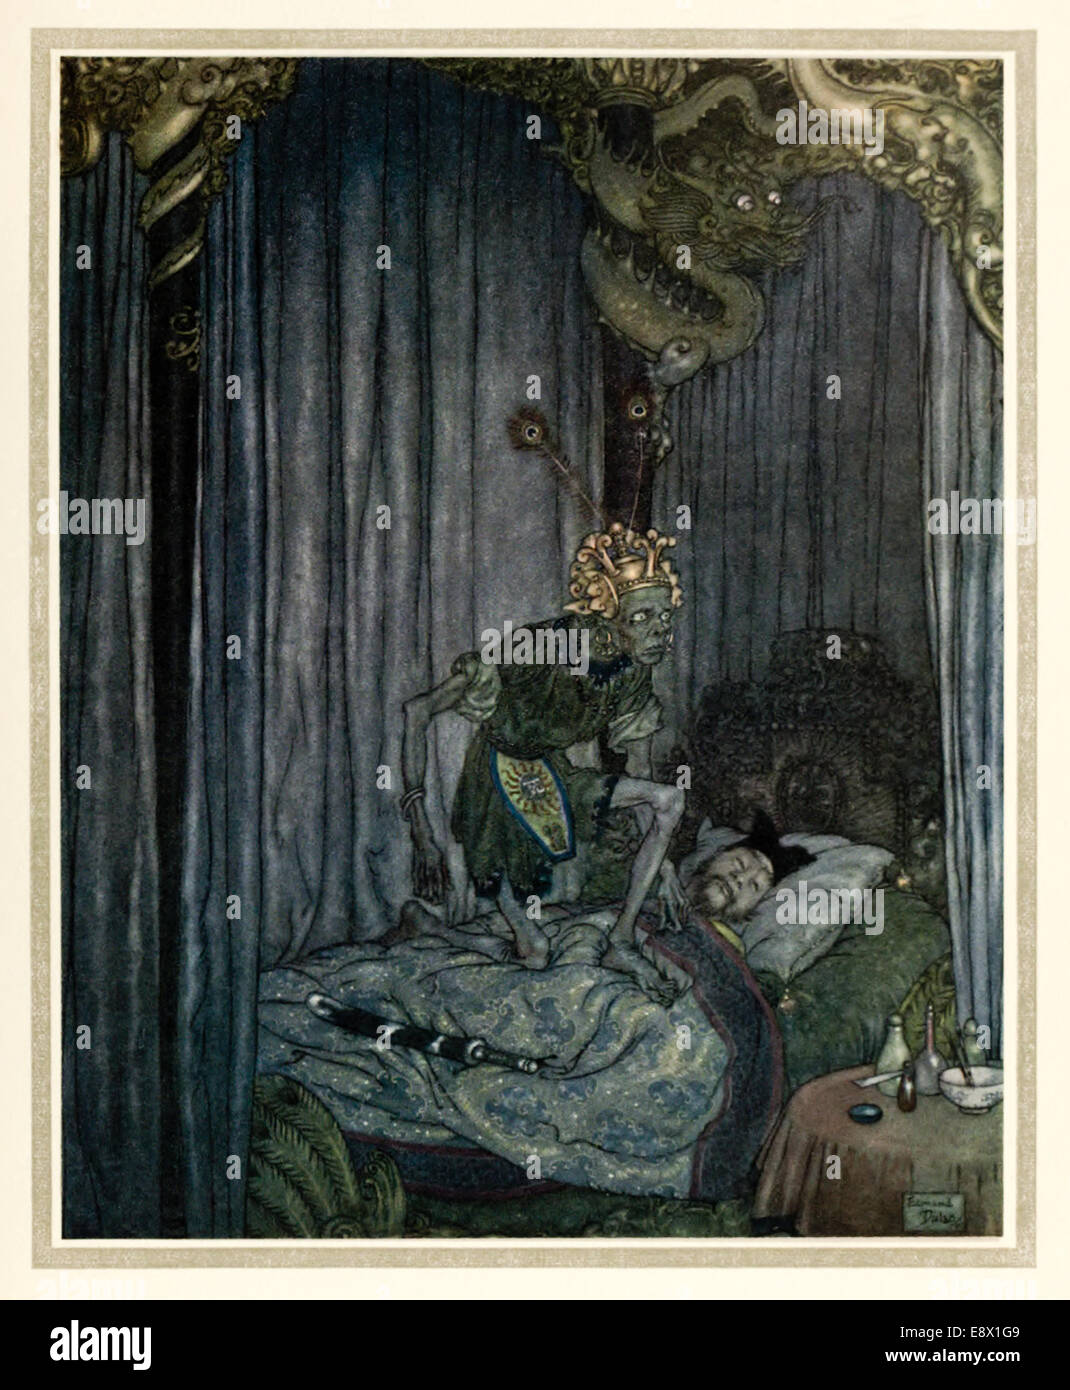 Die Nachtigall - Edmund Dulac (1882-1953) Illustration aus "Geschichten von Hans Andersen". Siehe Beschreibung für mehr Informationen. Stockfoto